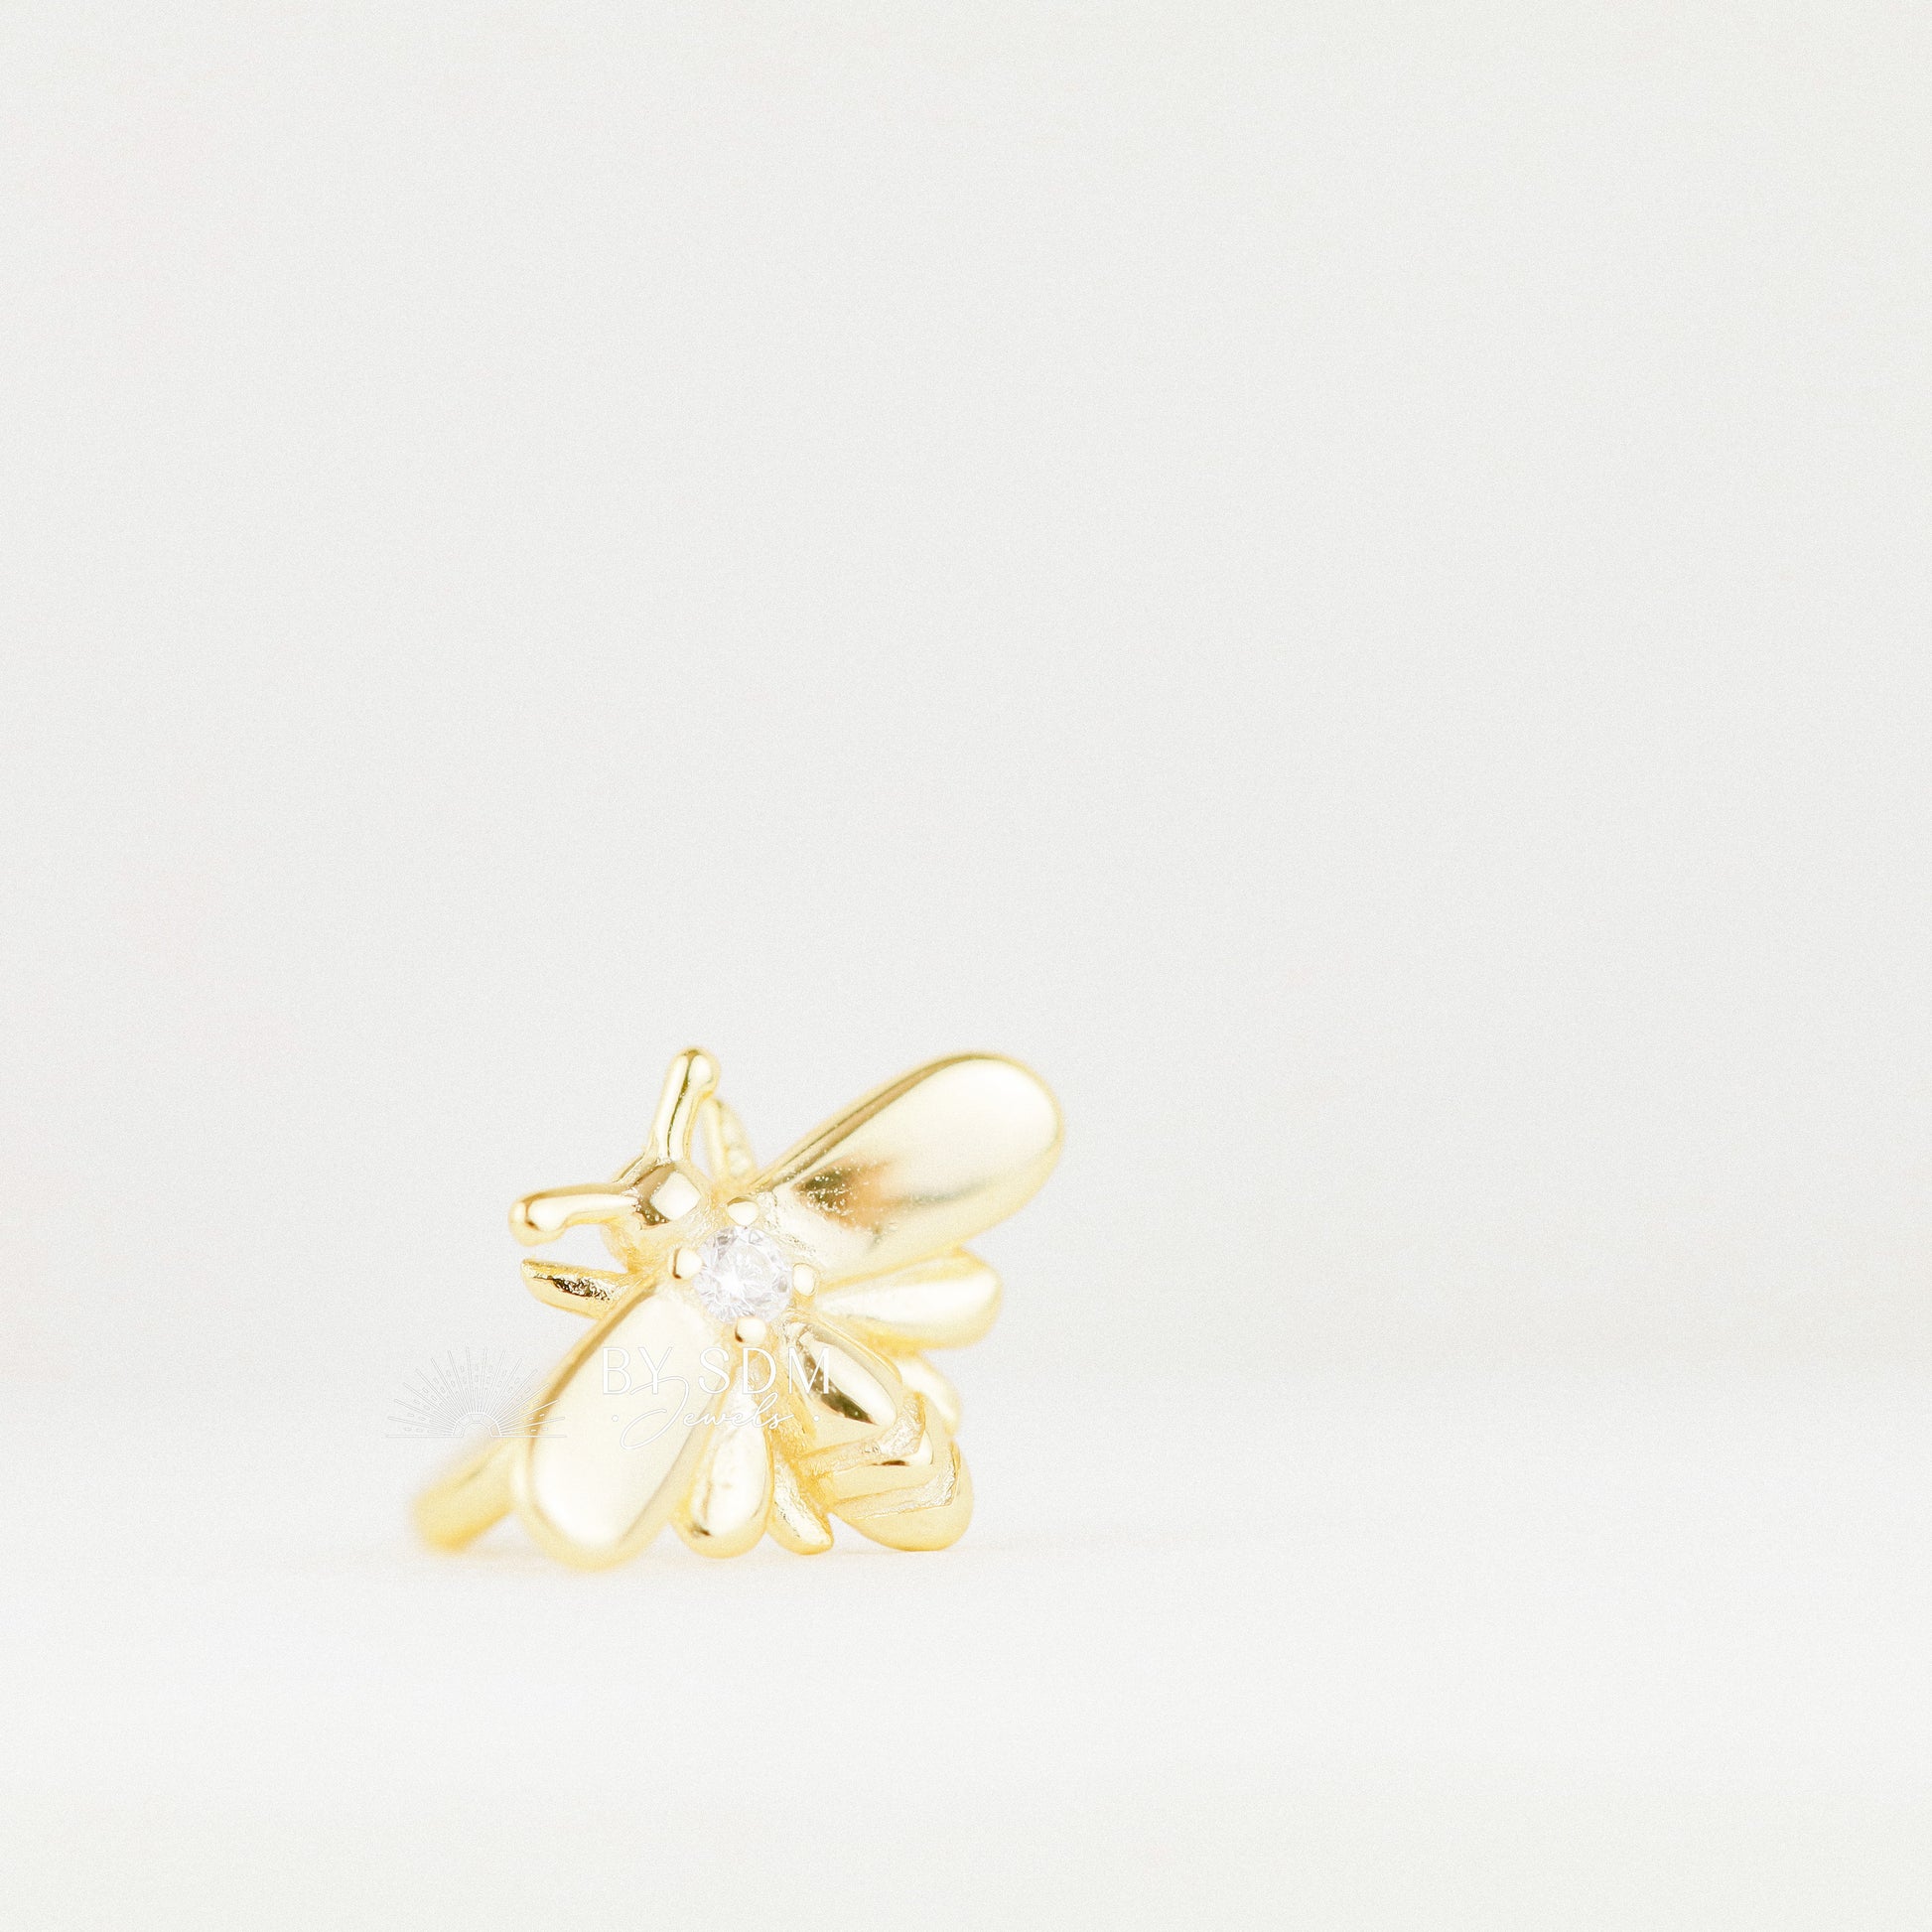 Gold Bee Ear Cuff • Honey Bee Earrings • BYSDMJEWELS